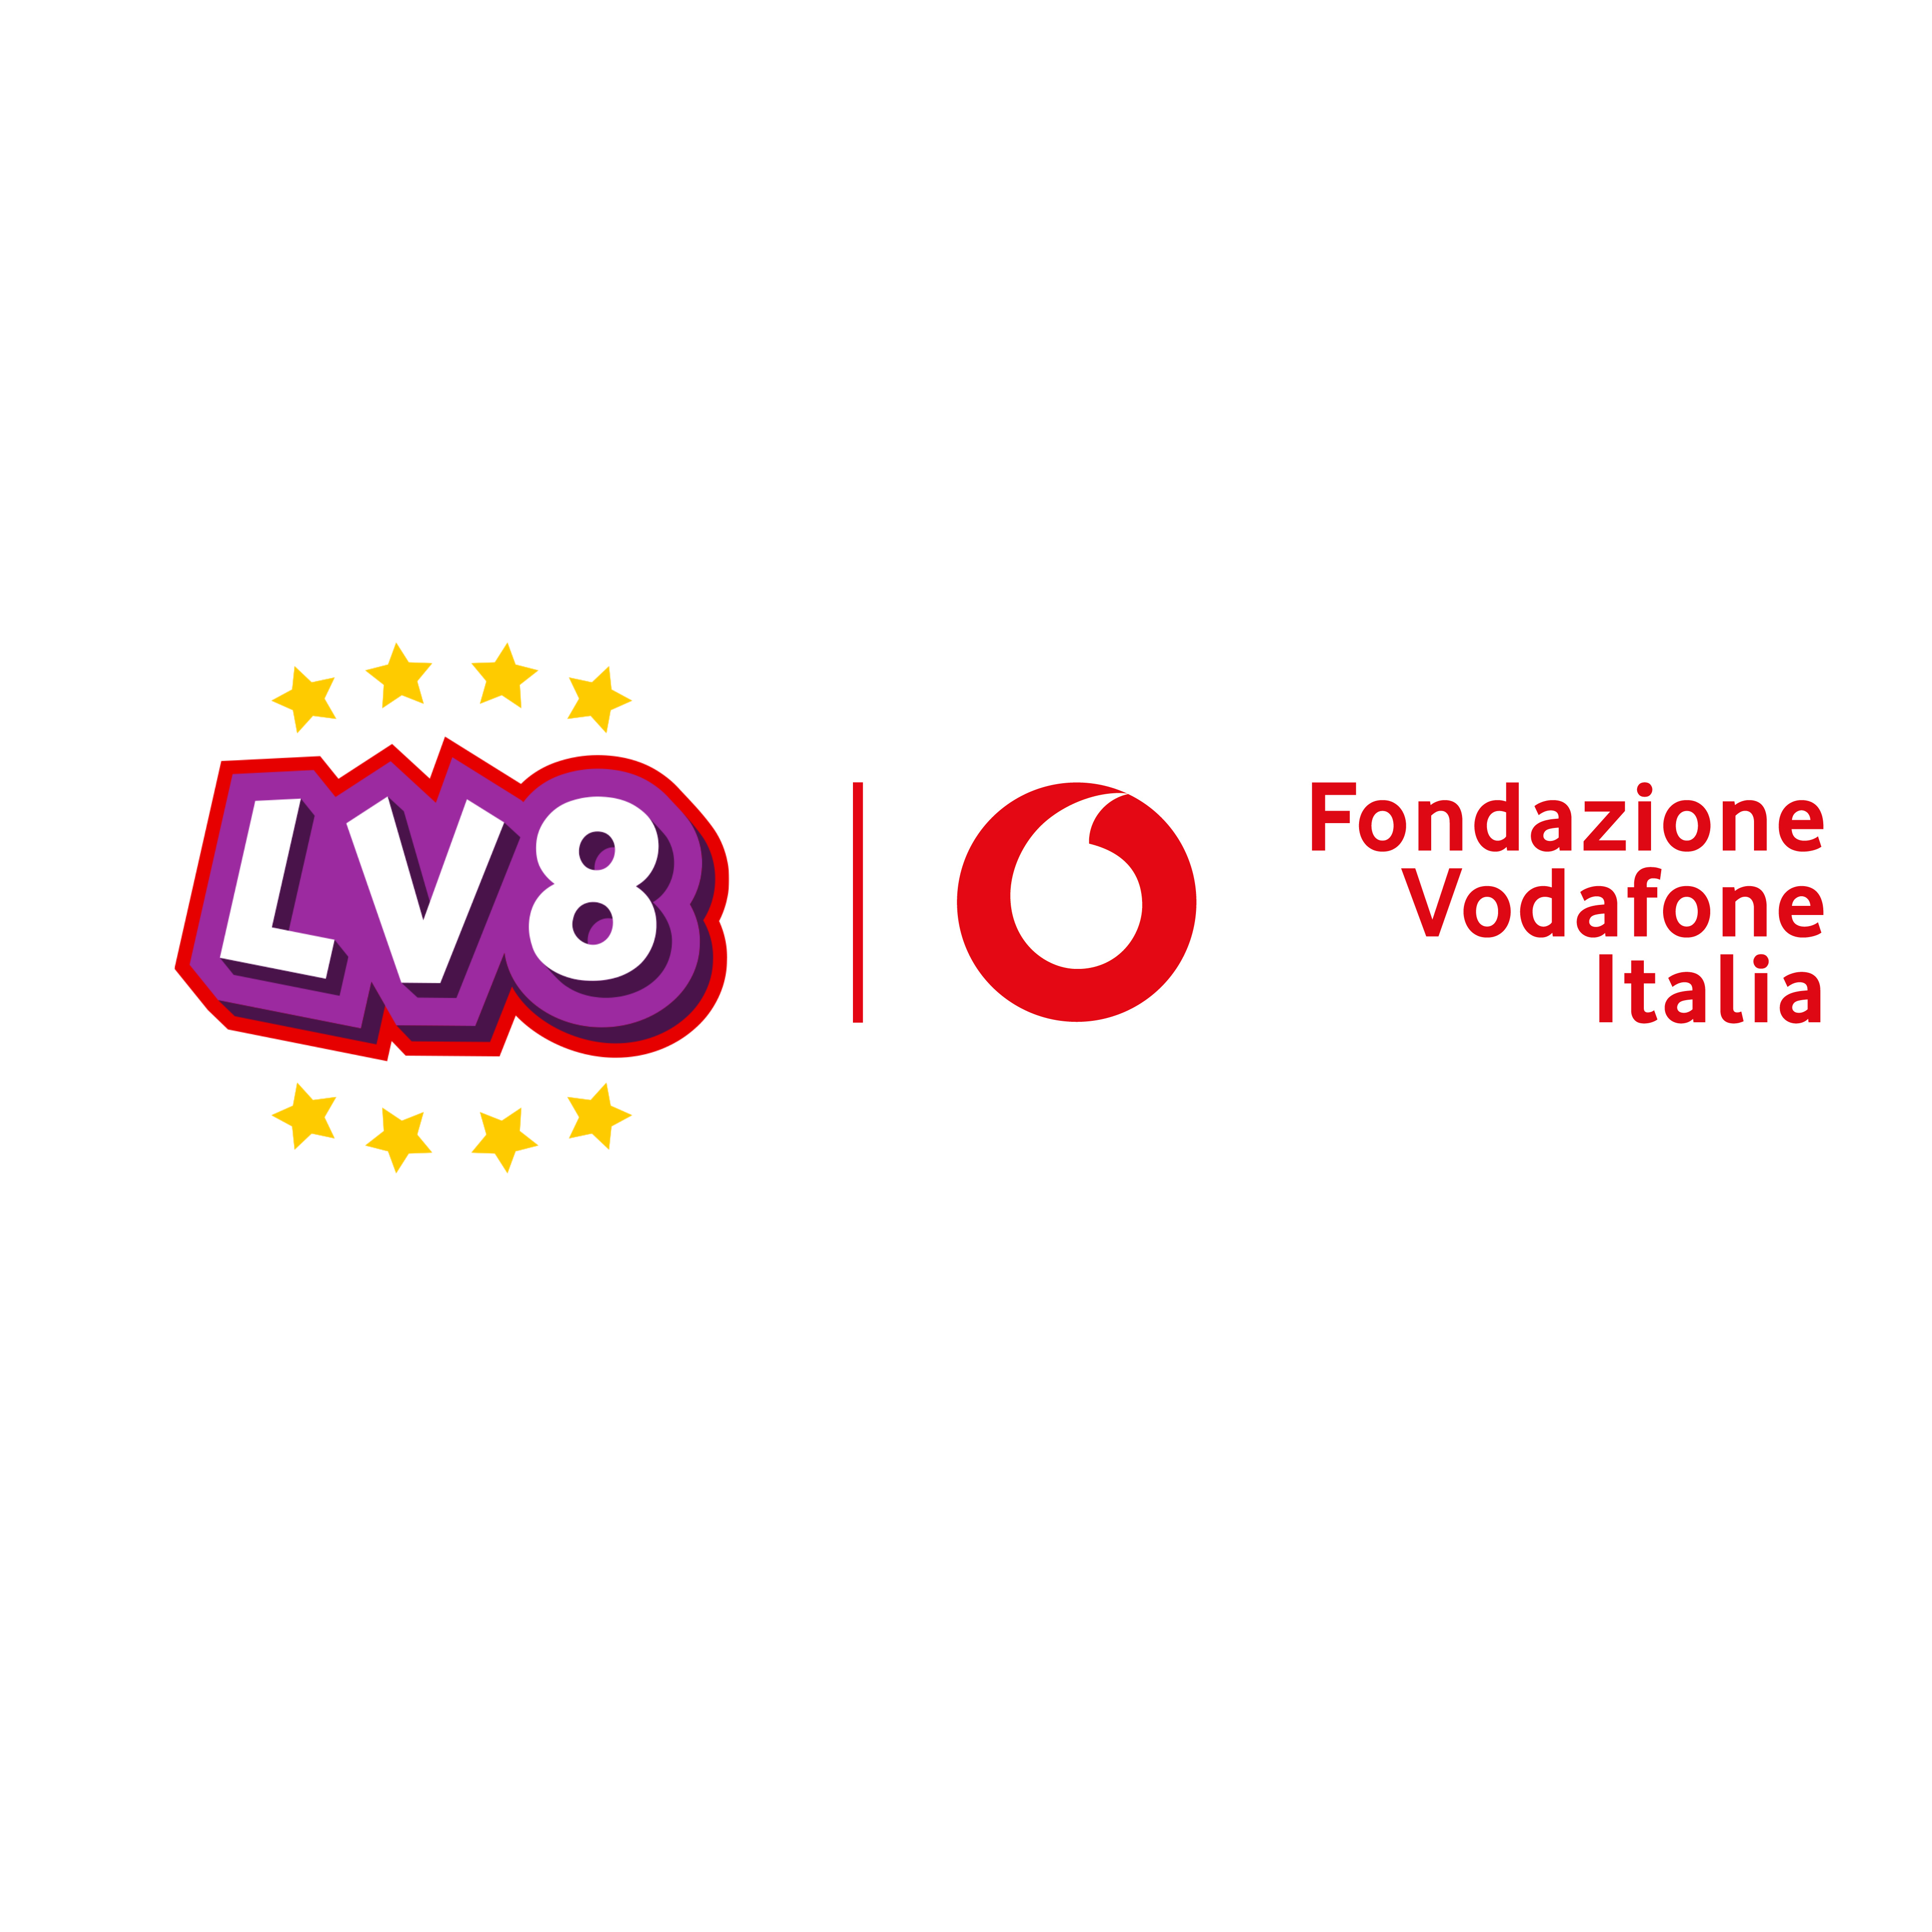 Fondazione Vodafone